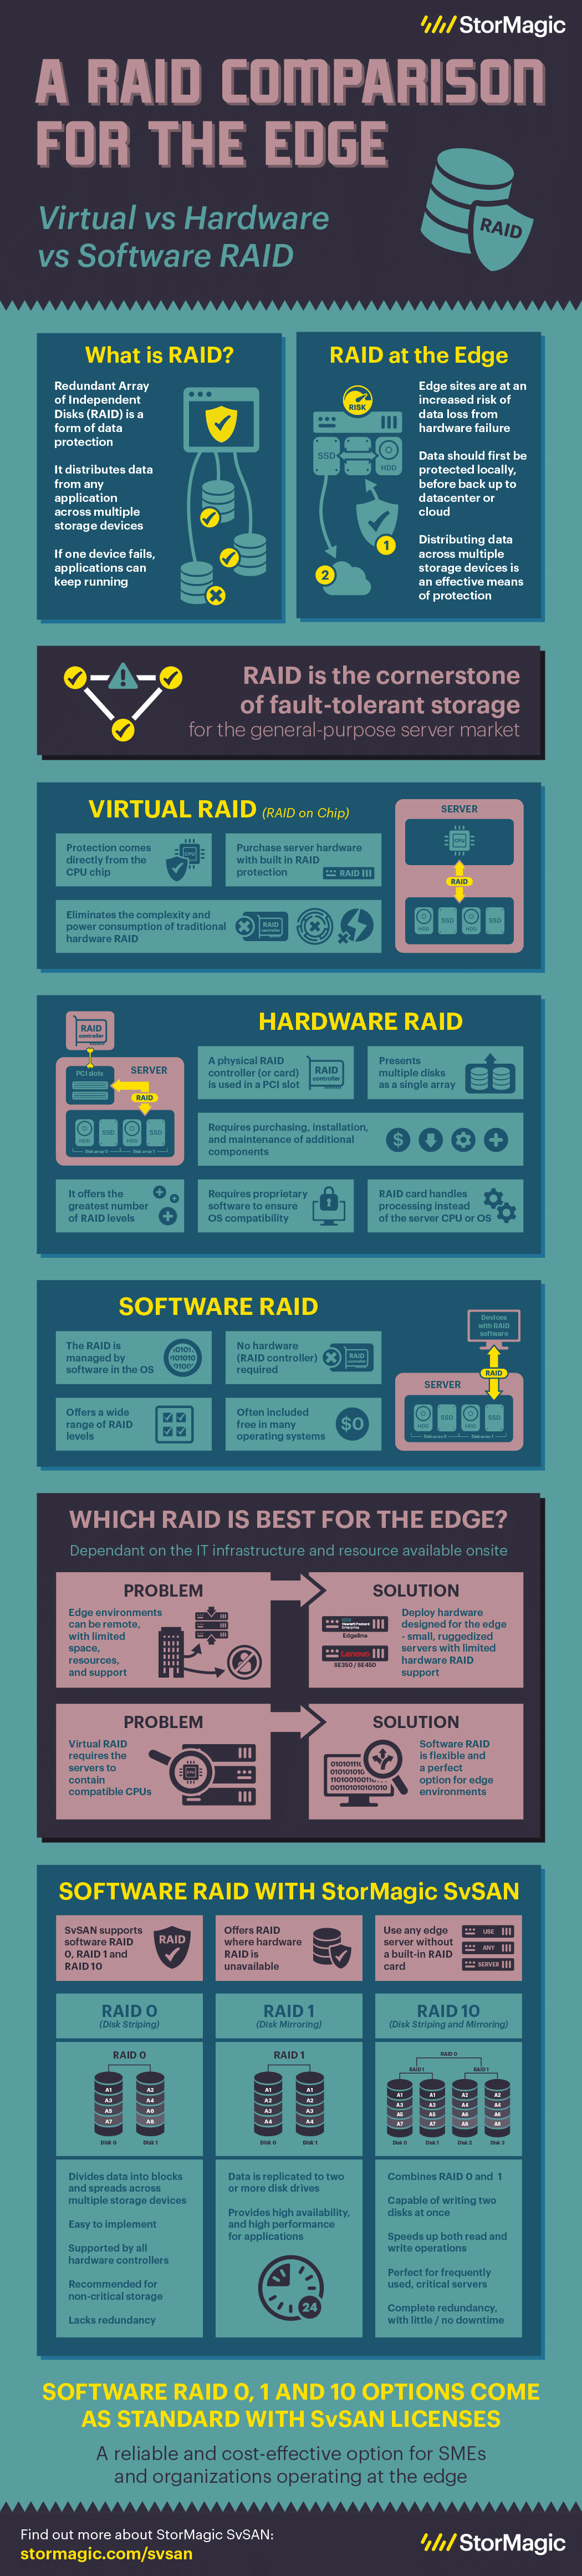 Infografik zum Vergleich von Software- und Hardware-RAID für den Edge